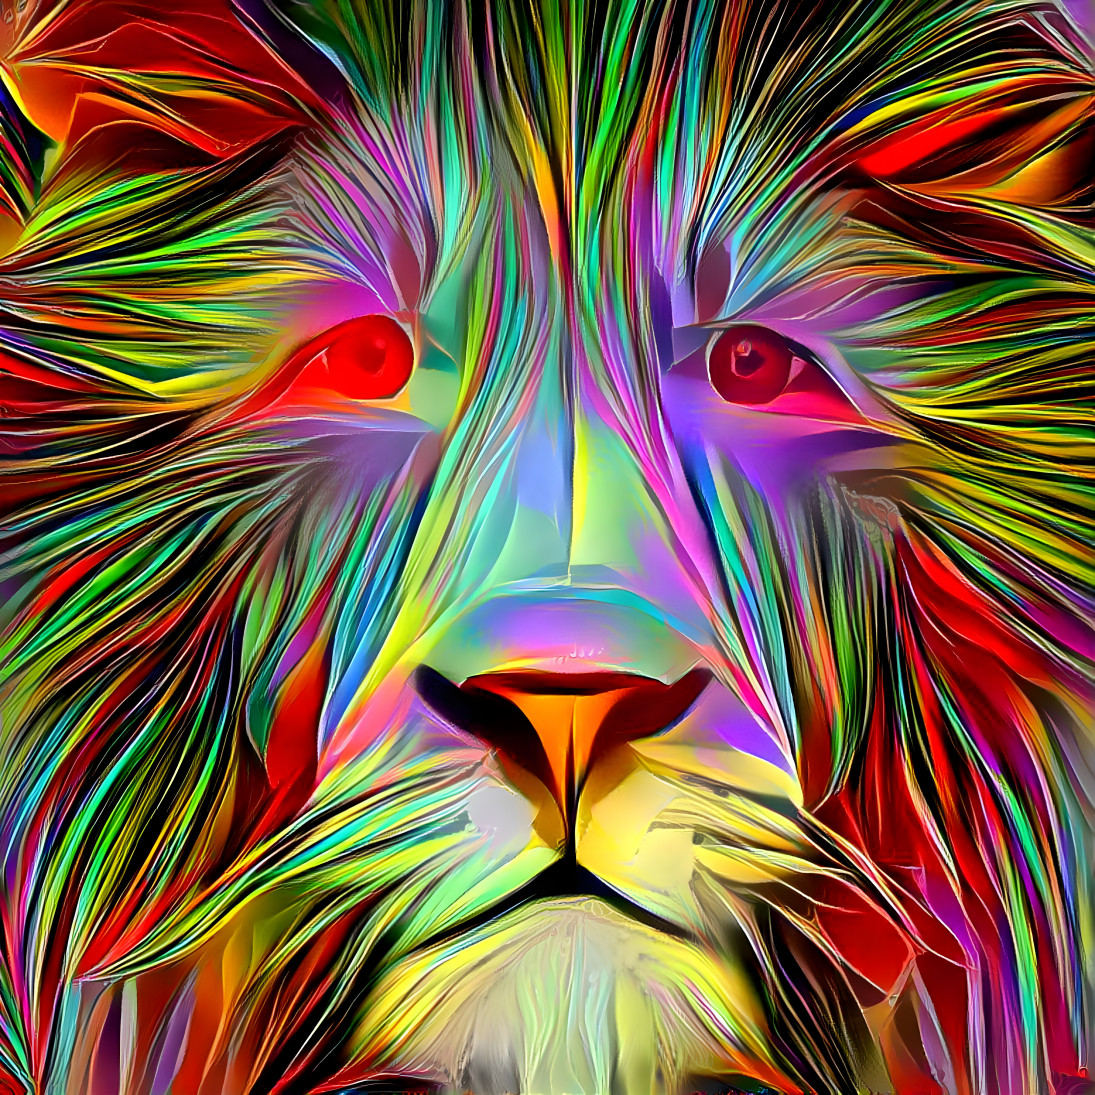 Lion Spirit